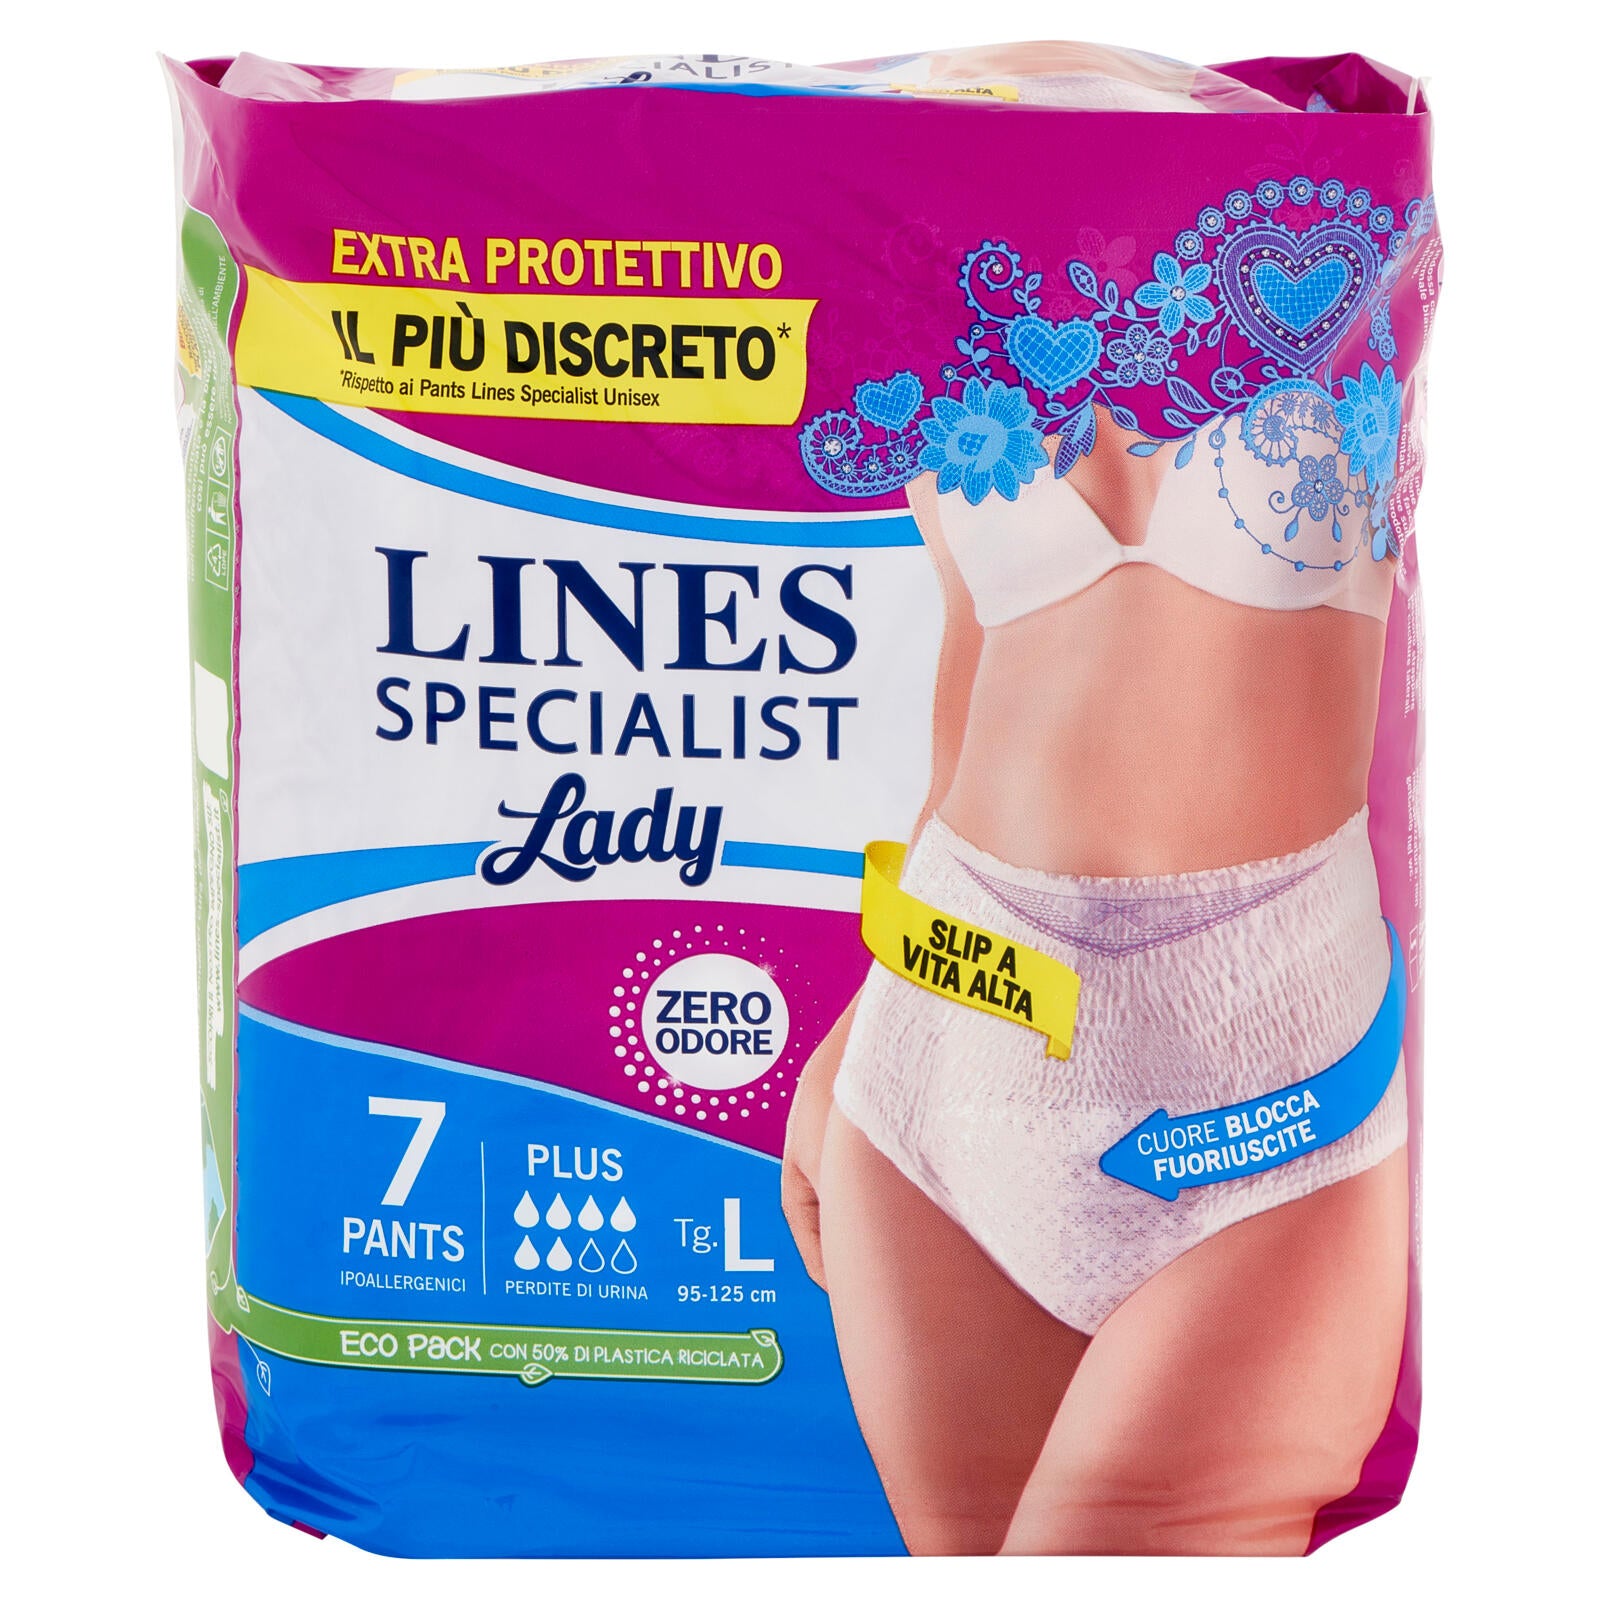 Lines Specialist Lady Pants Plus Tg.L 7 pz ->